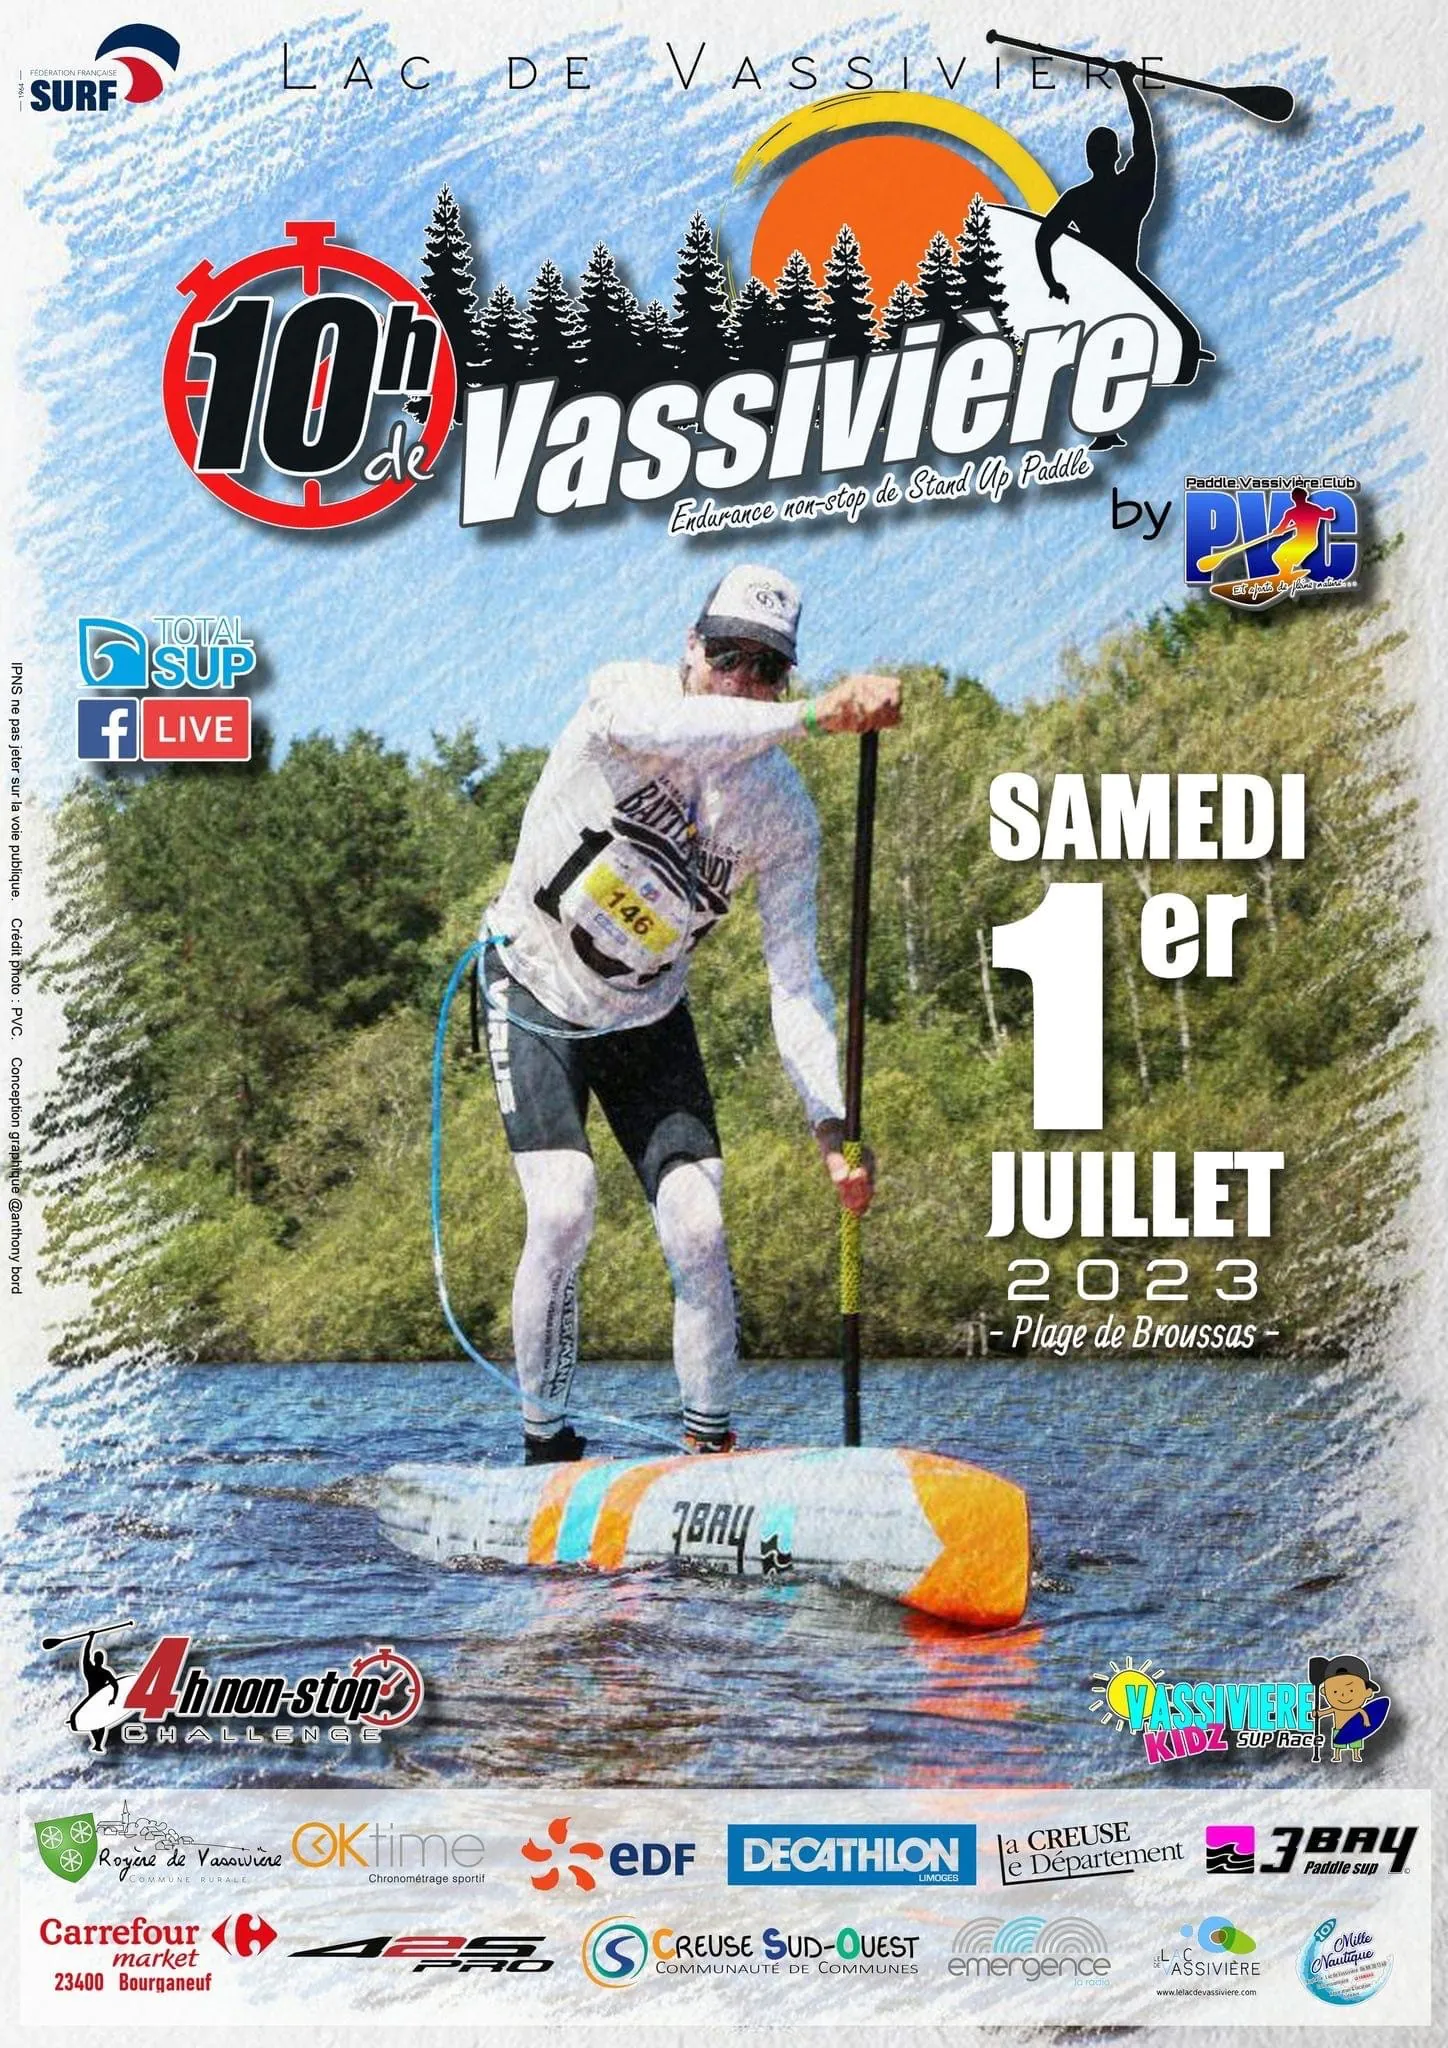 Les 10h de Vassivière : endurance paddle